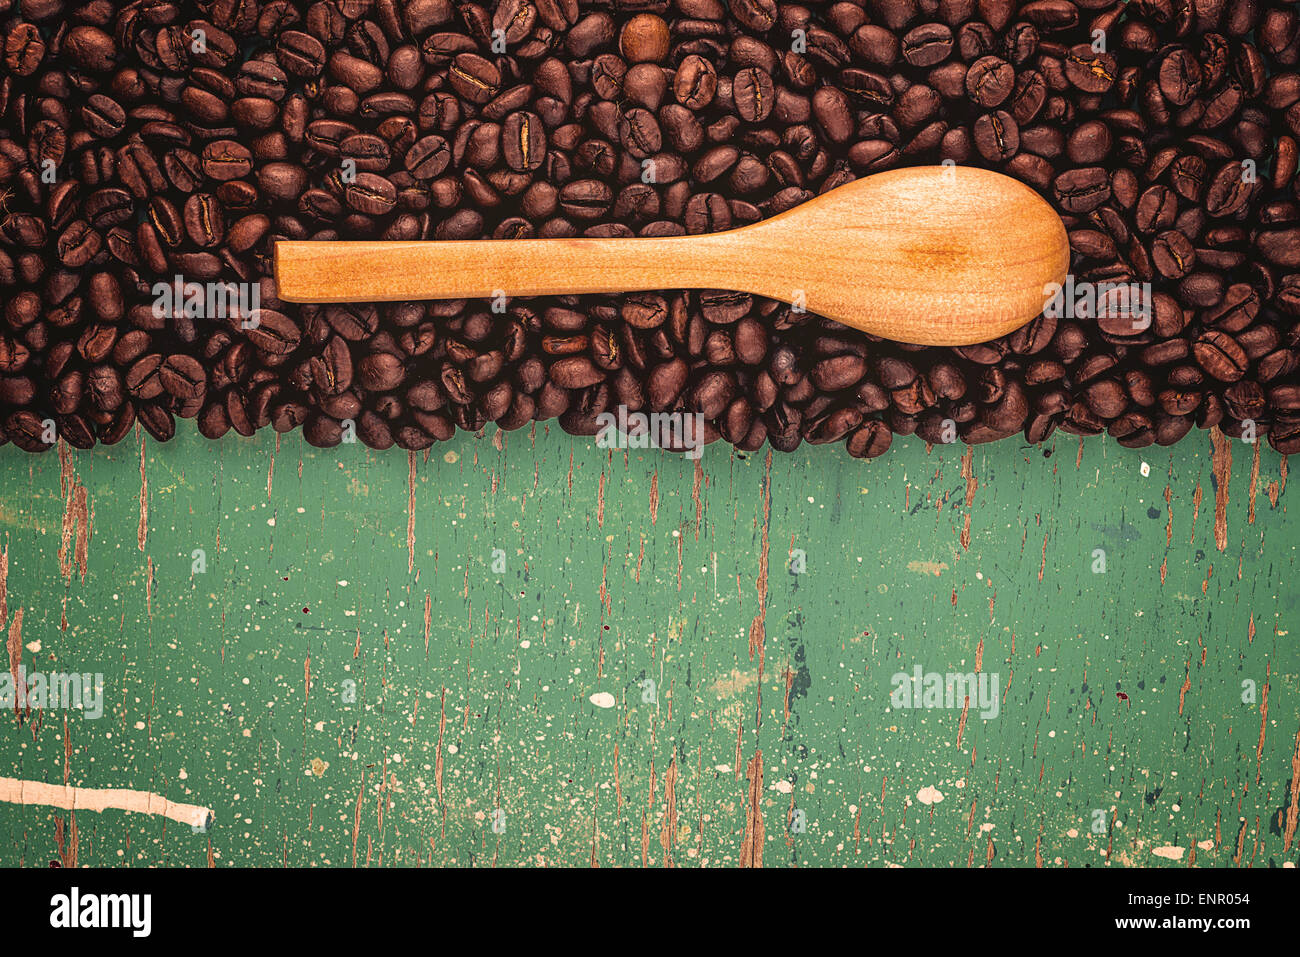 Les grains de café Roasted Brown et cuillère en bois rustique sur la planche en bois Grunge Background Conseil Banque D'Images